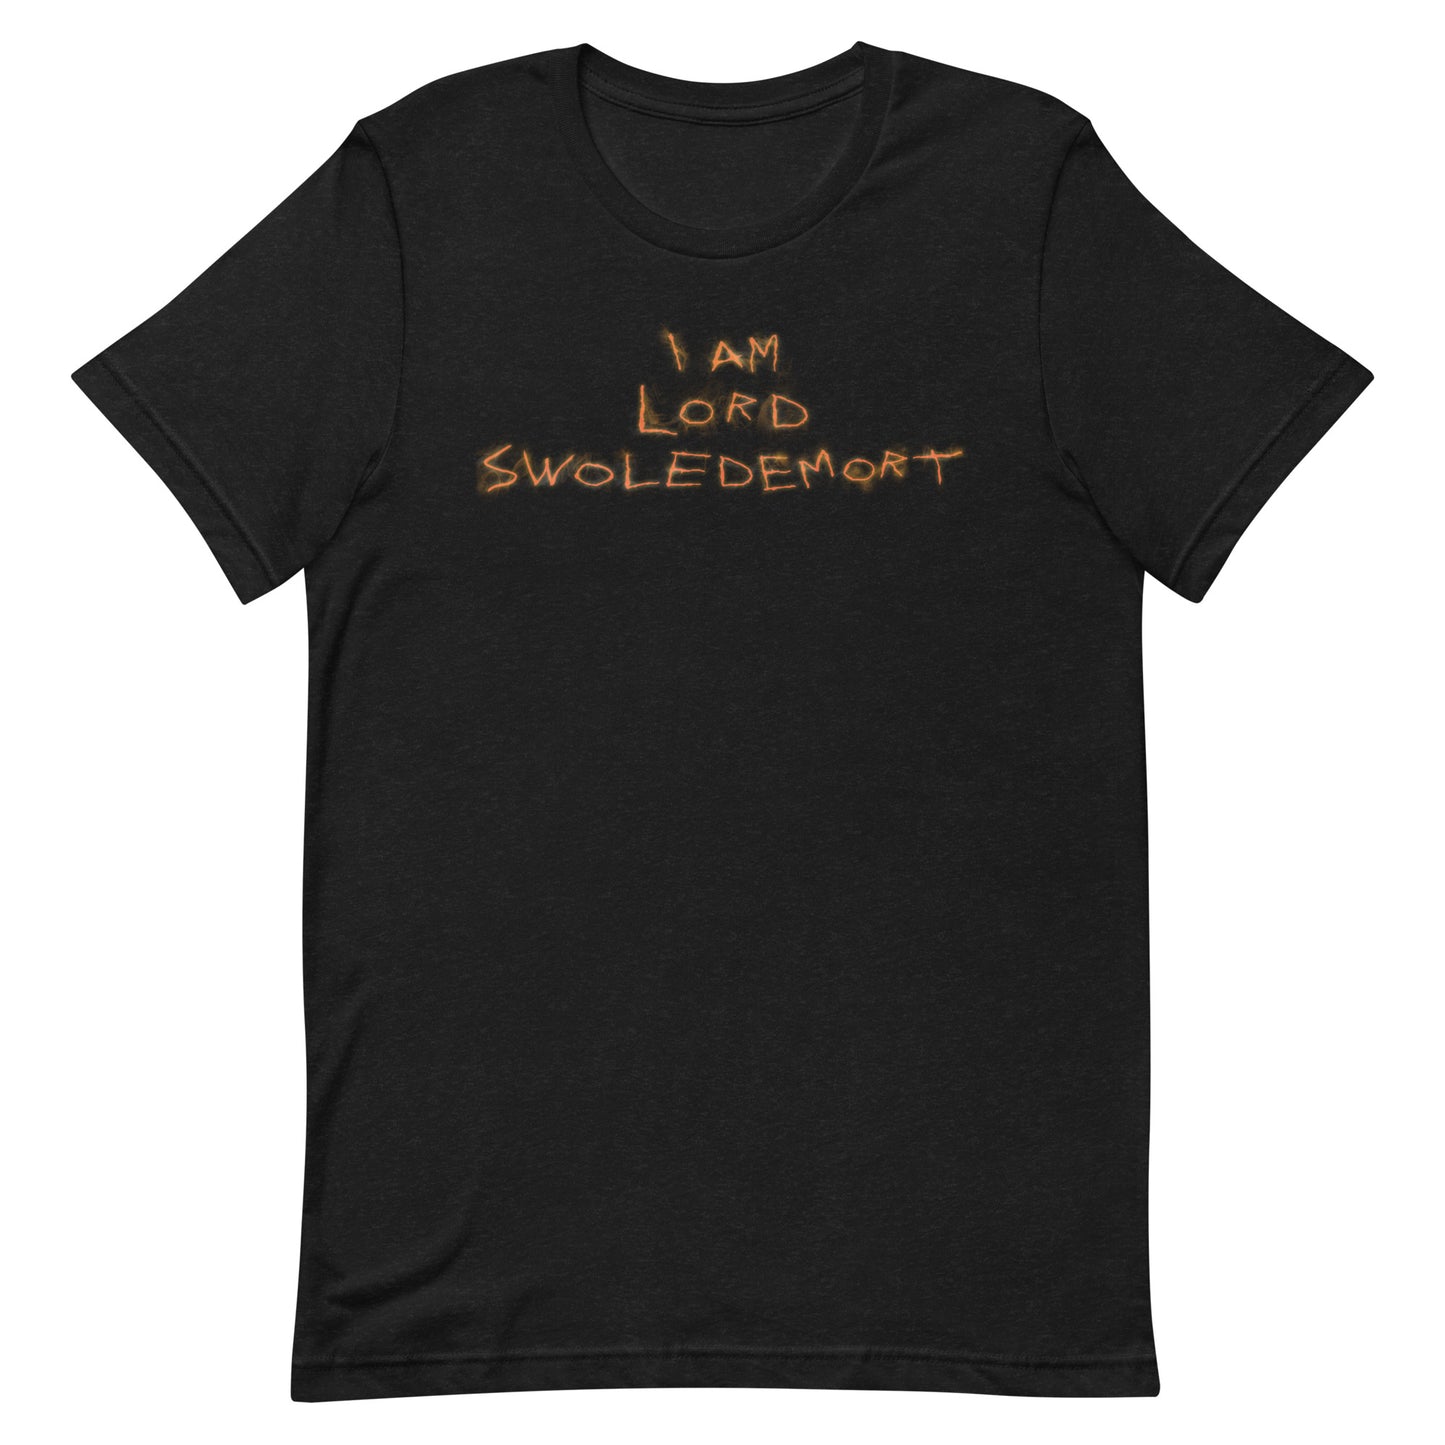 I AM LORD SWOLEDEMORT T-SHIRT